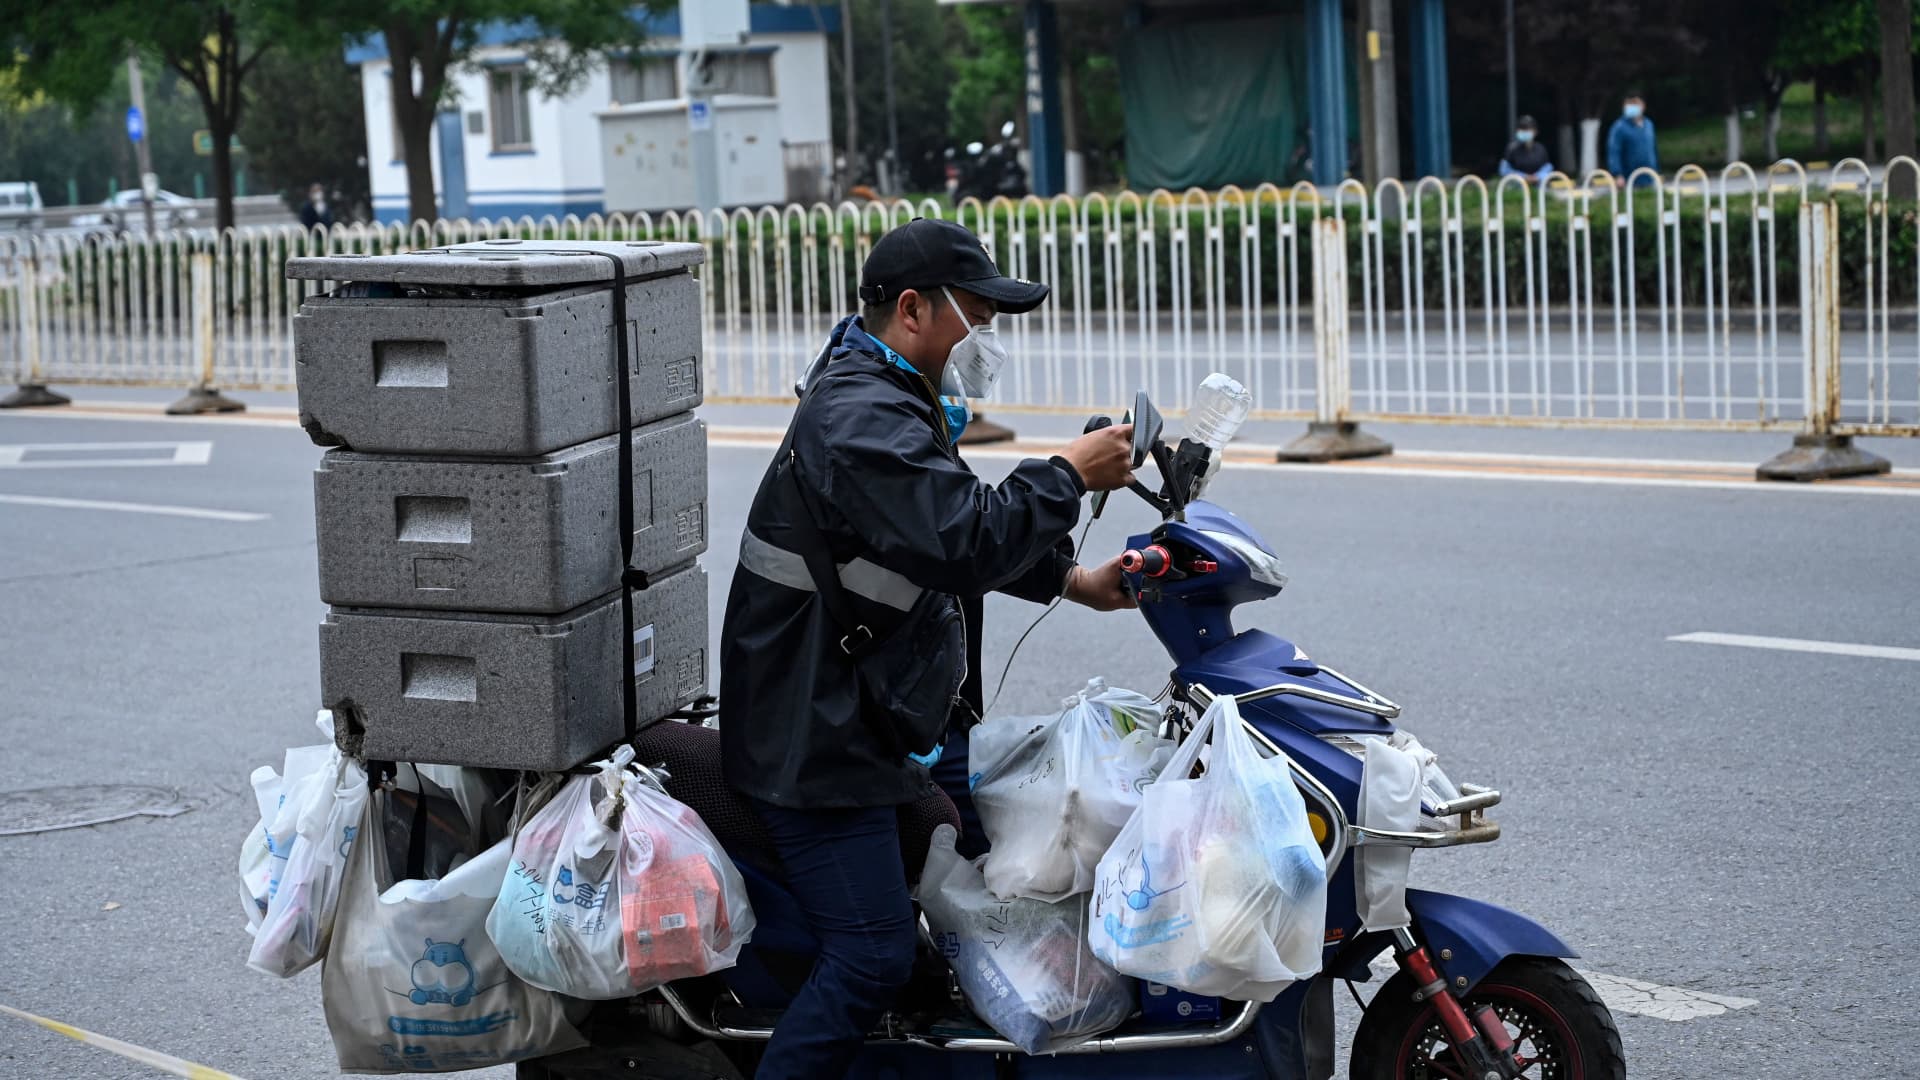 Harga konsumen naik di China karena Covid memacu penimbunan makanan